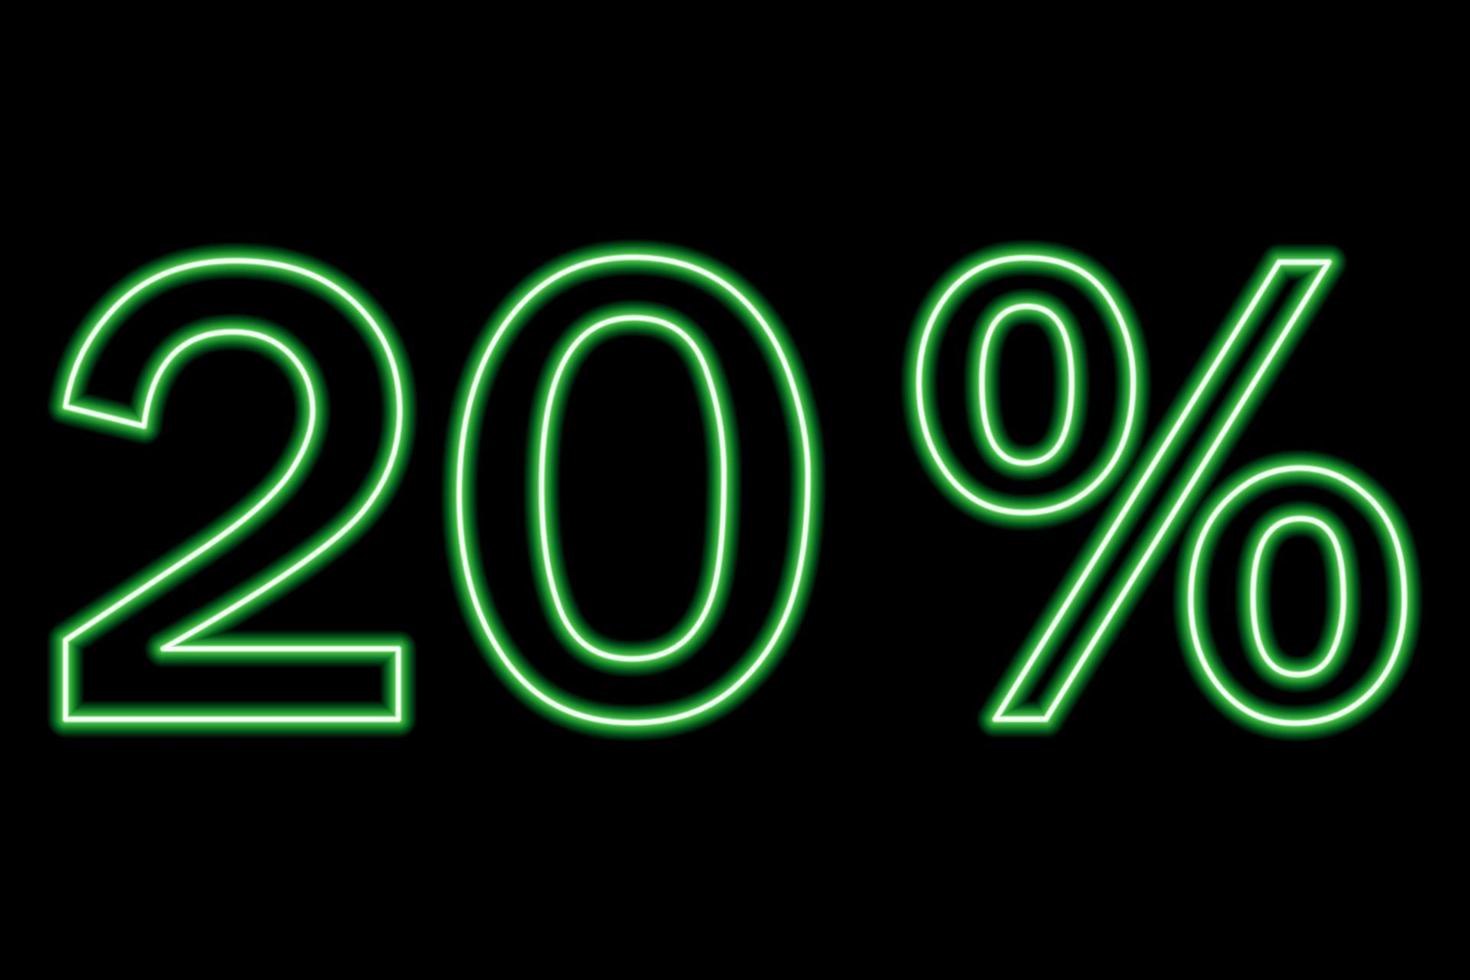 20 por cento de inscrição em um fundo preto. linha verde em estilo neon. vetor